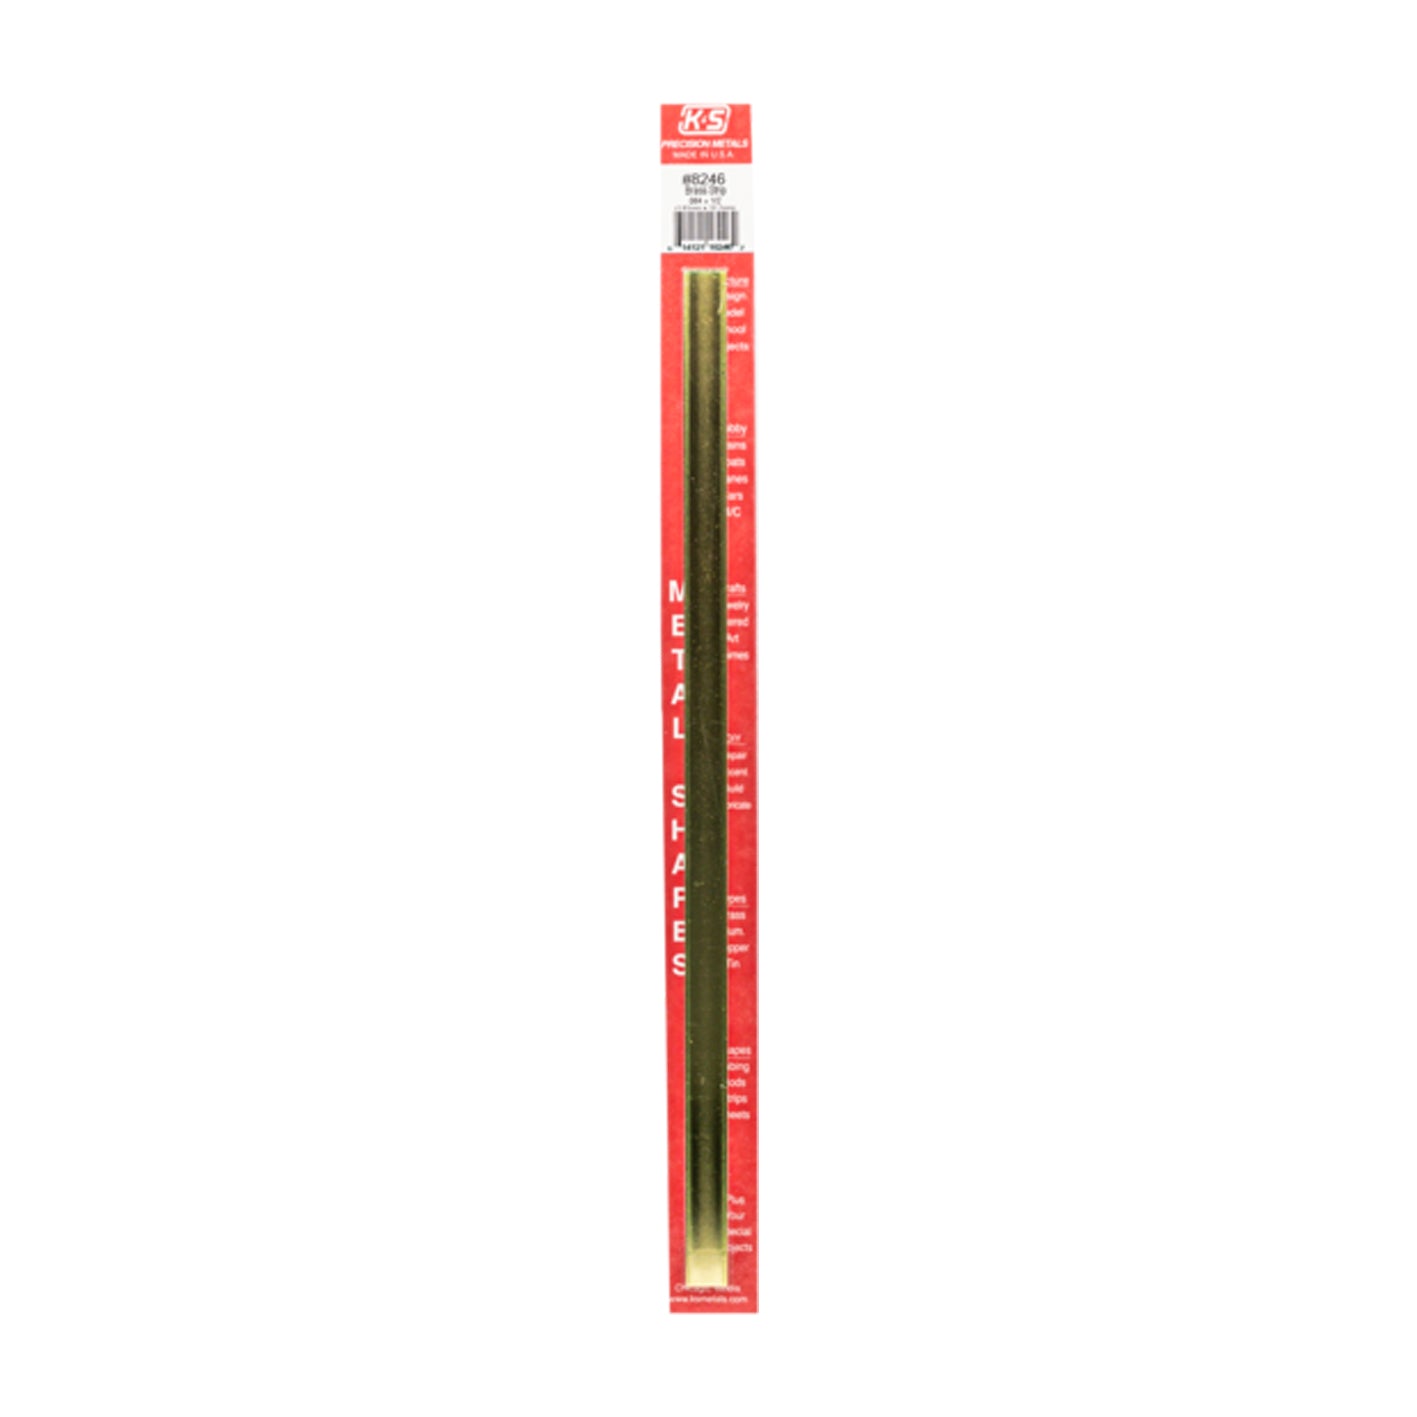 K&S™ Brass Strip: 0.064" Thick x 1/2" Wide x 12" Long (1 Piece)